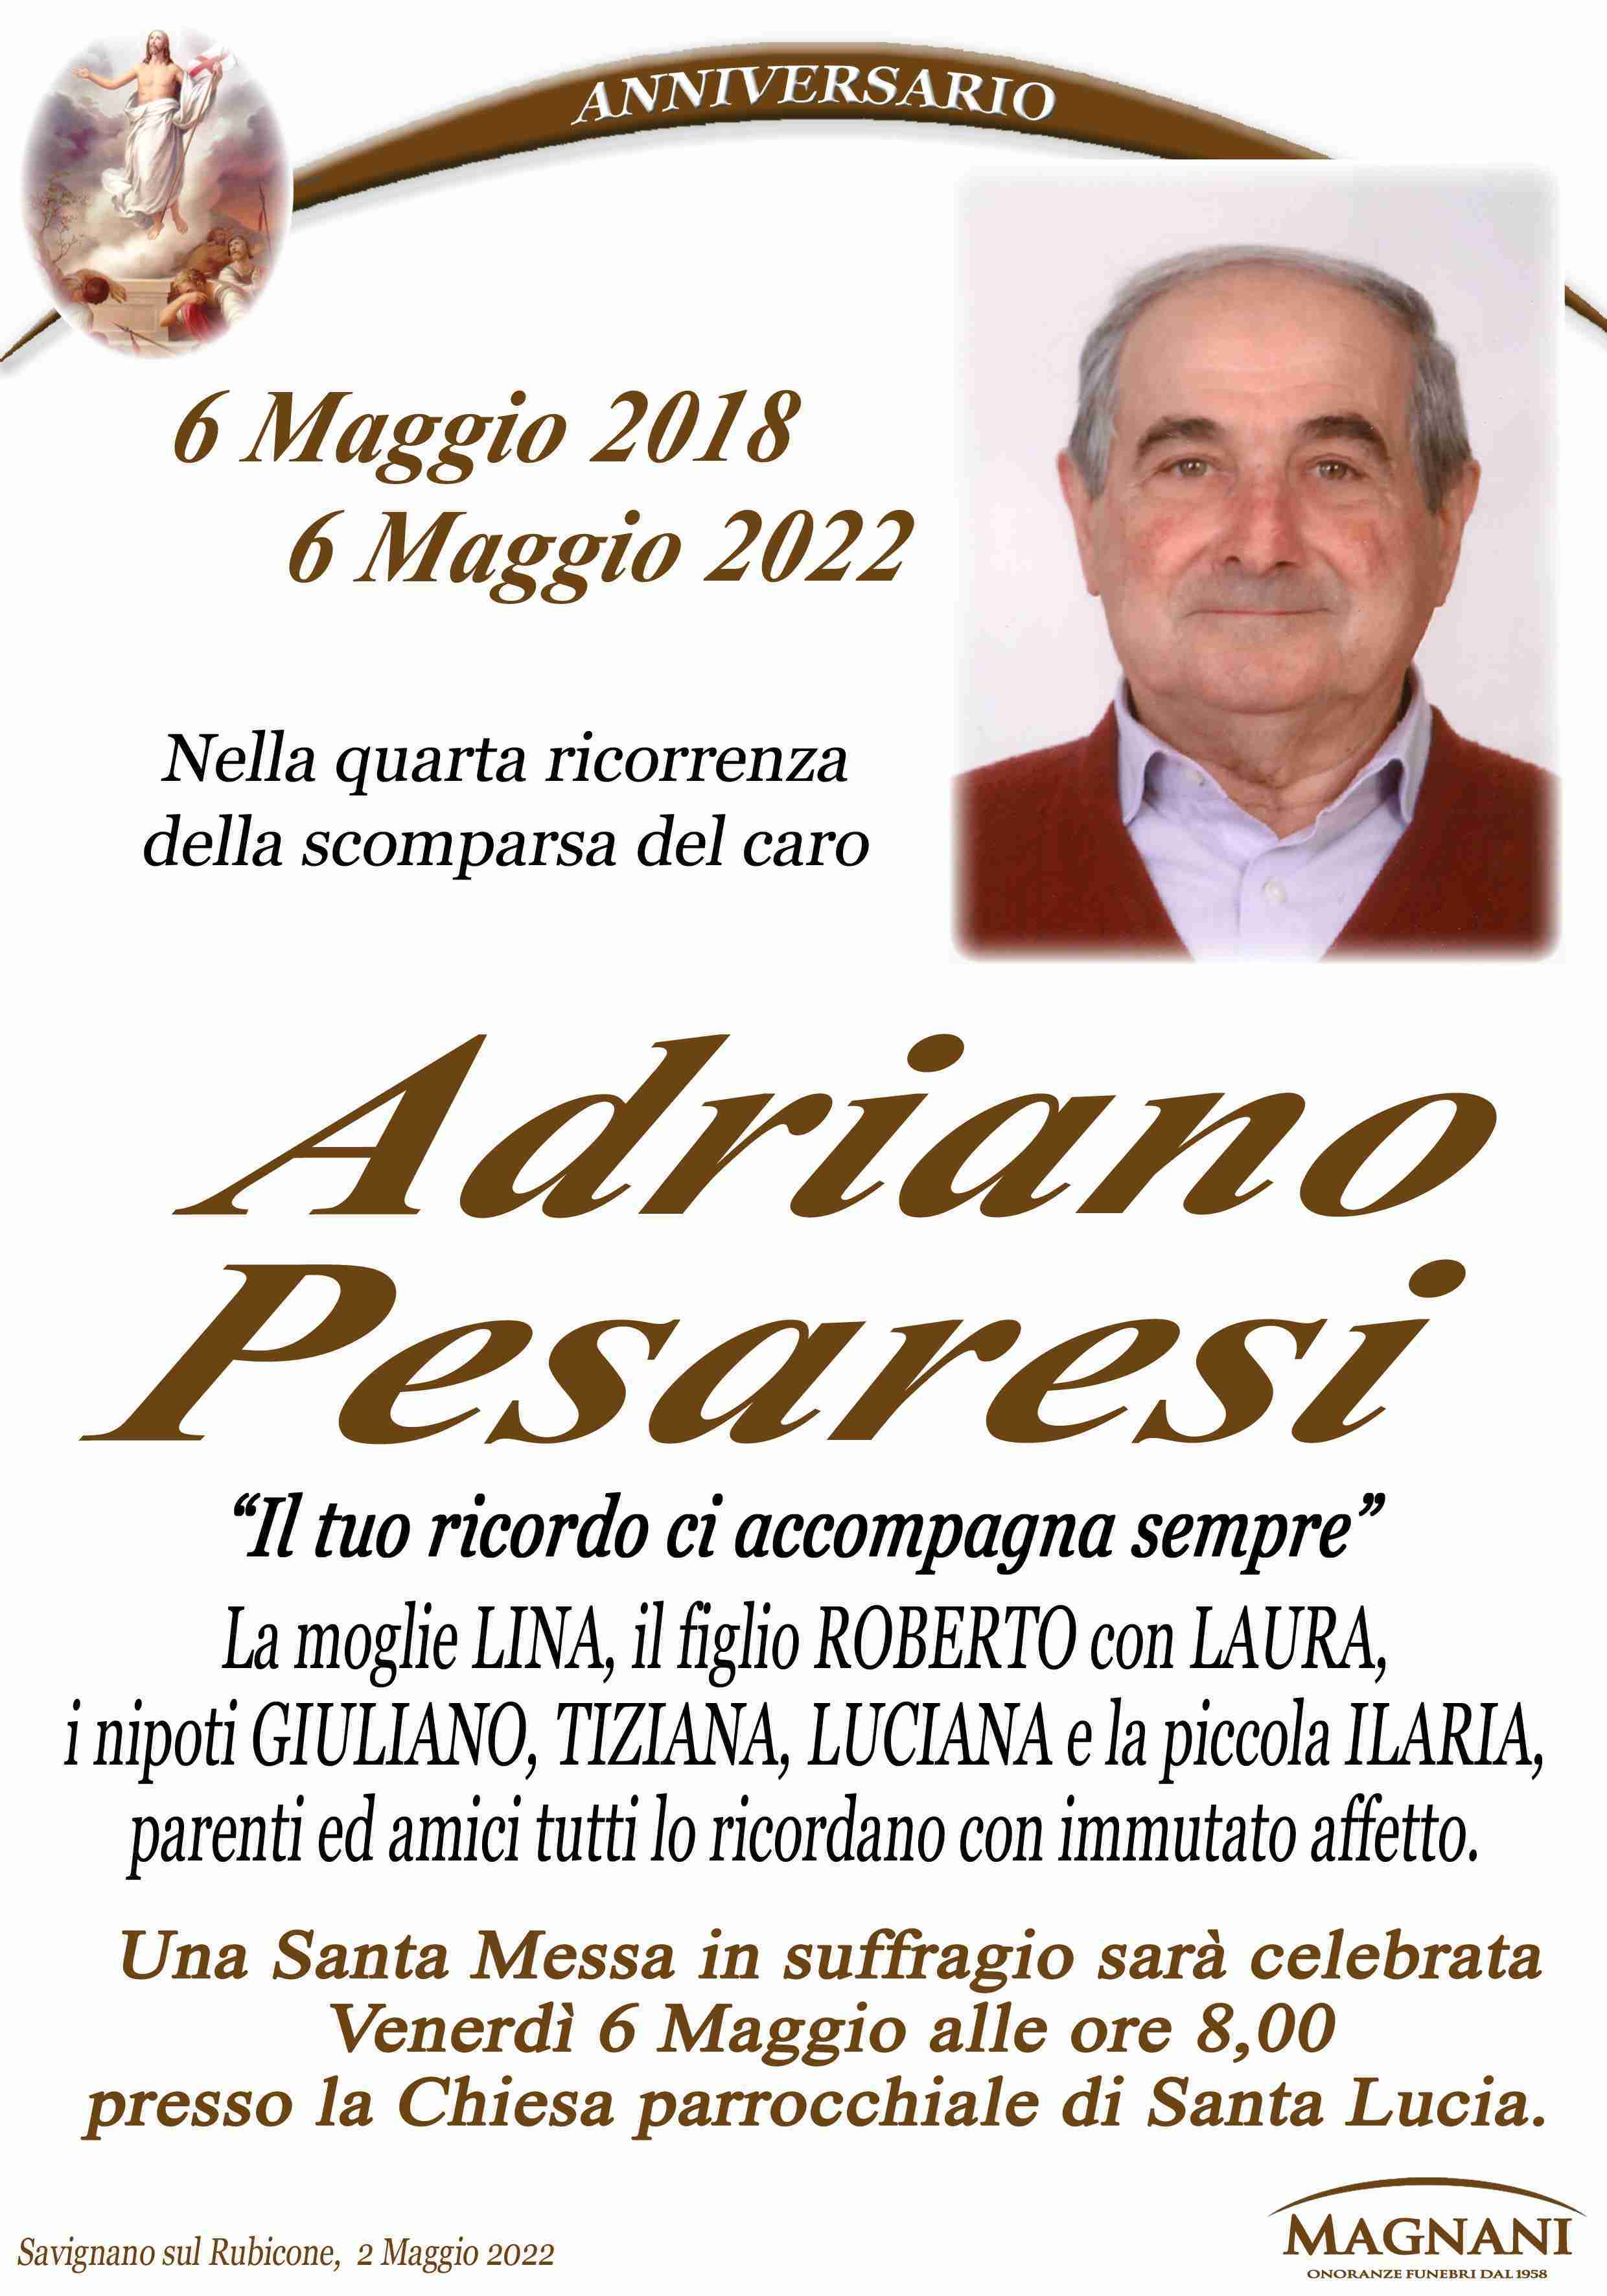 Adriano Pesaresi